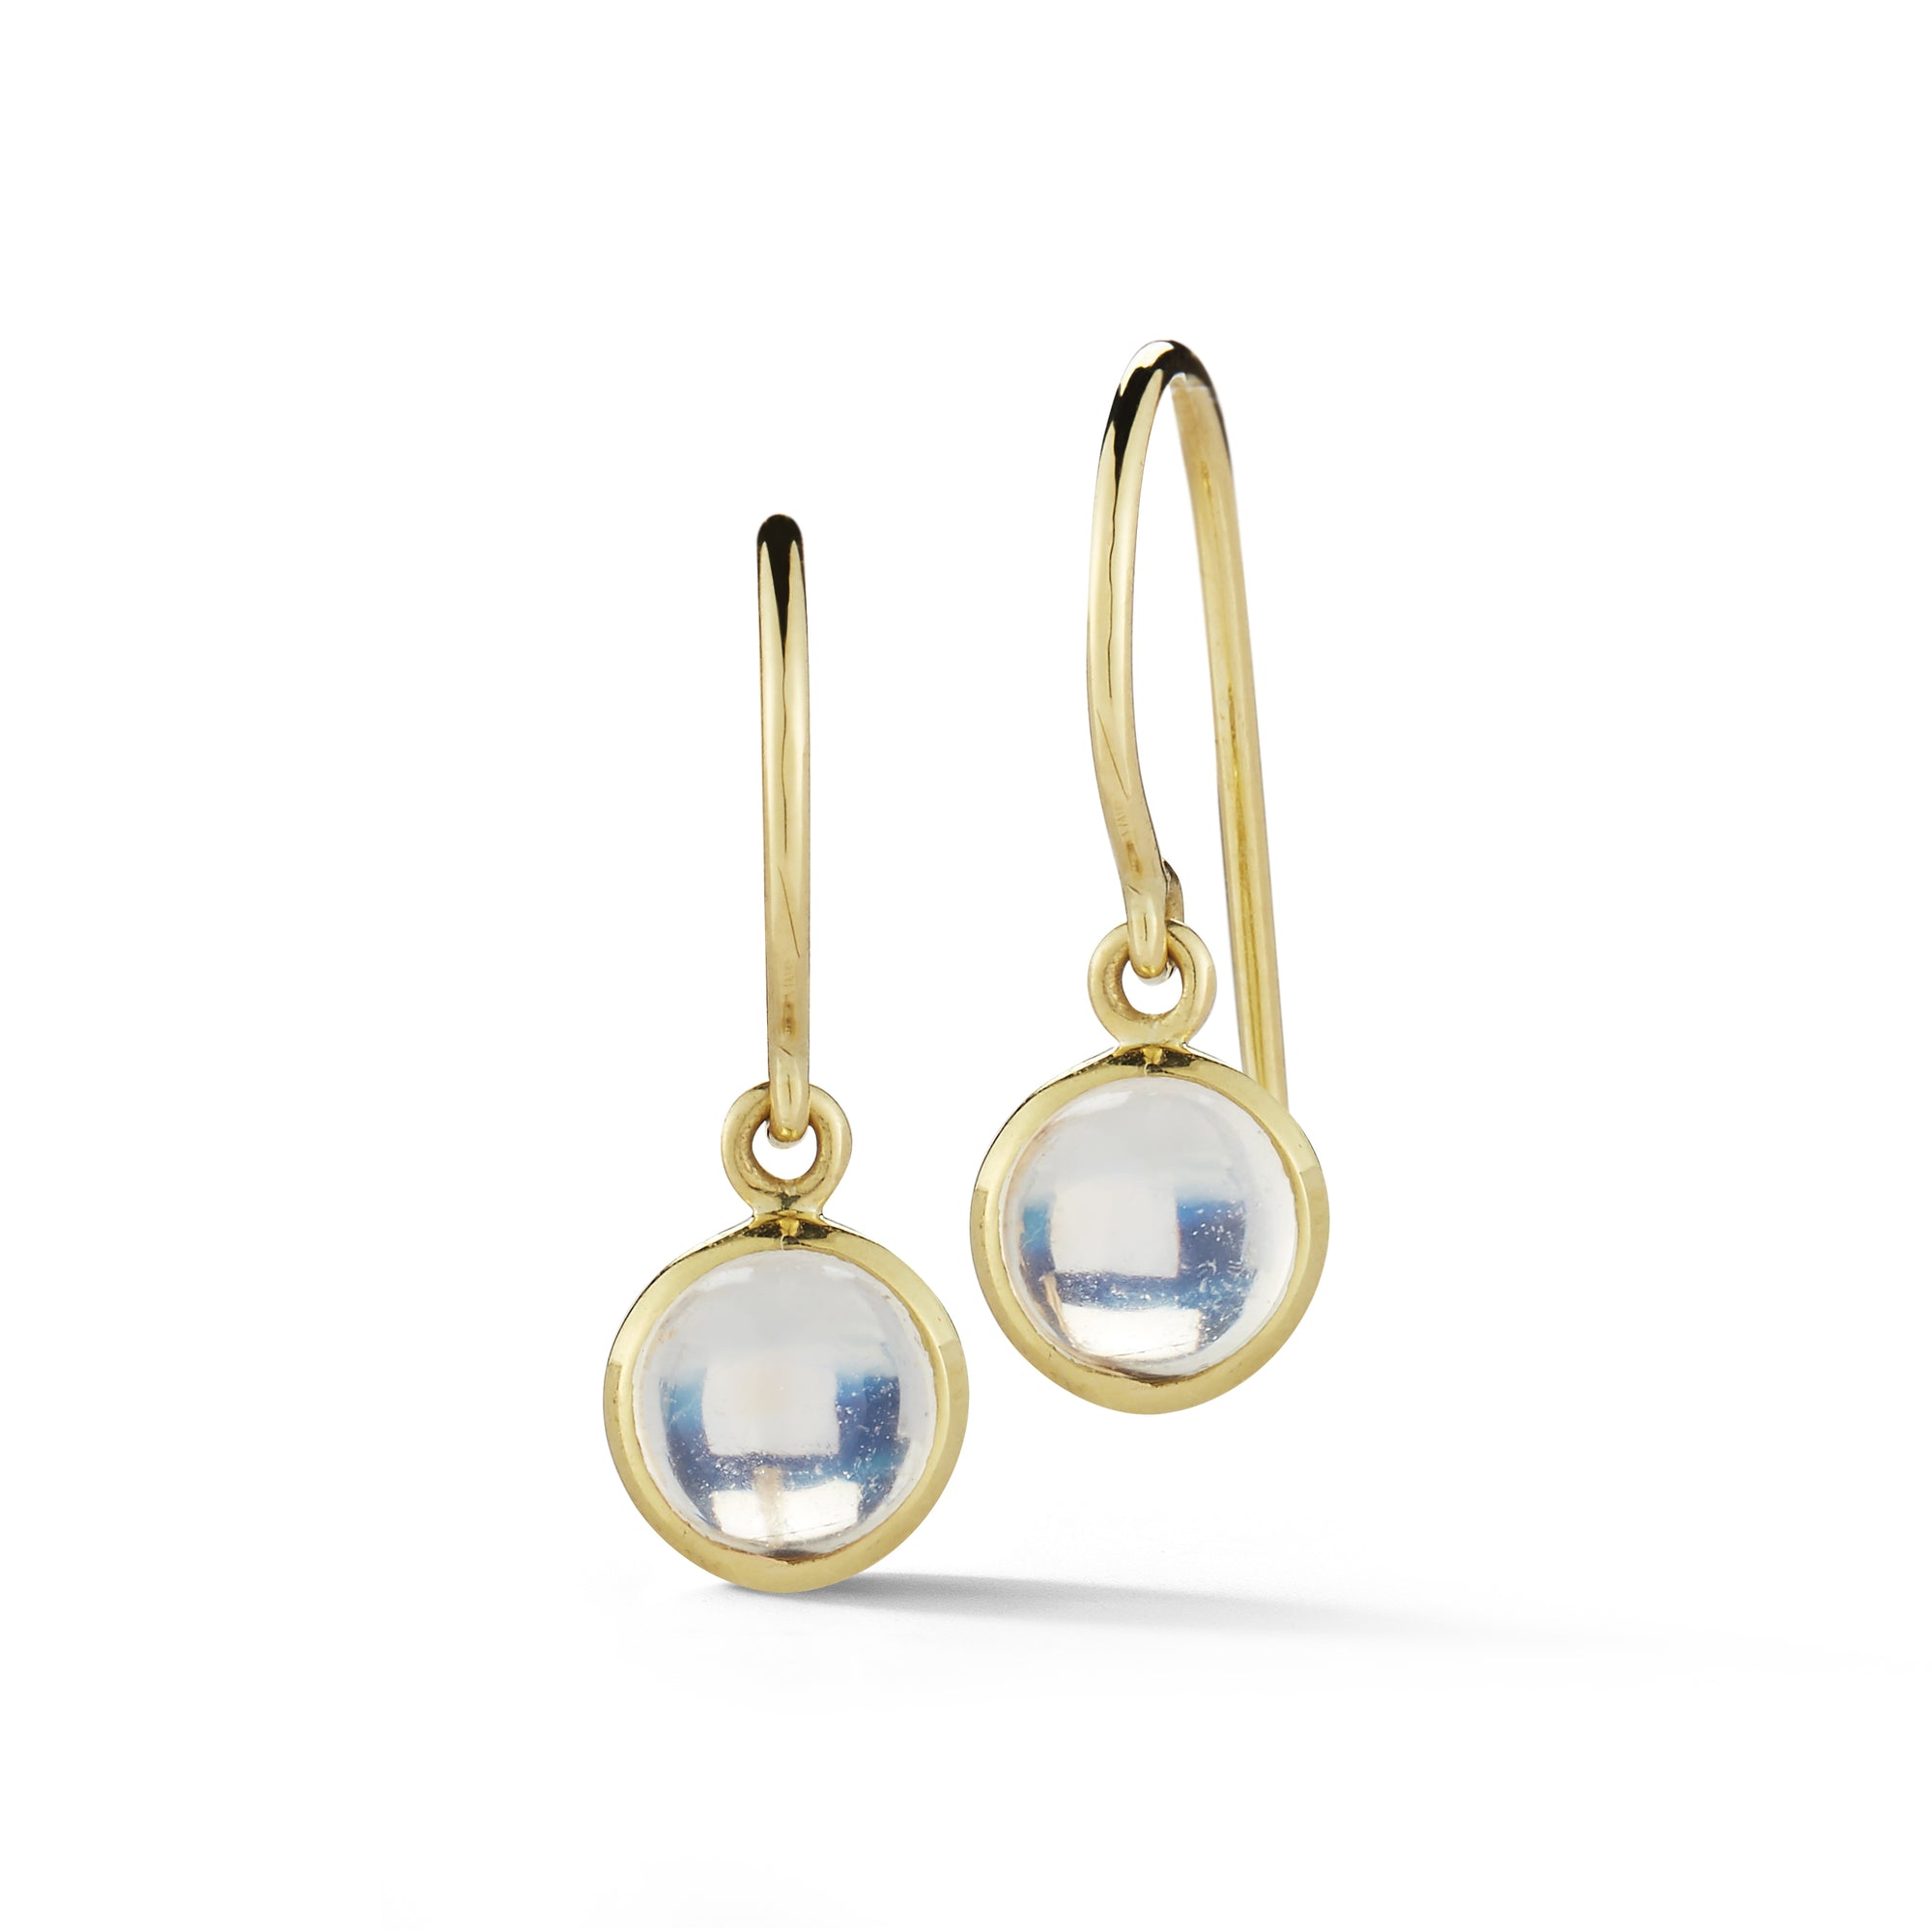 finn moonstone dangle earrings 18k gold by candice pool neistat